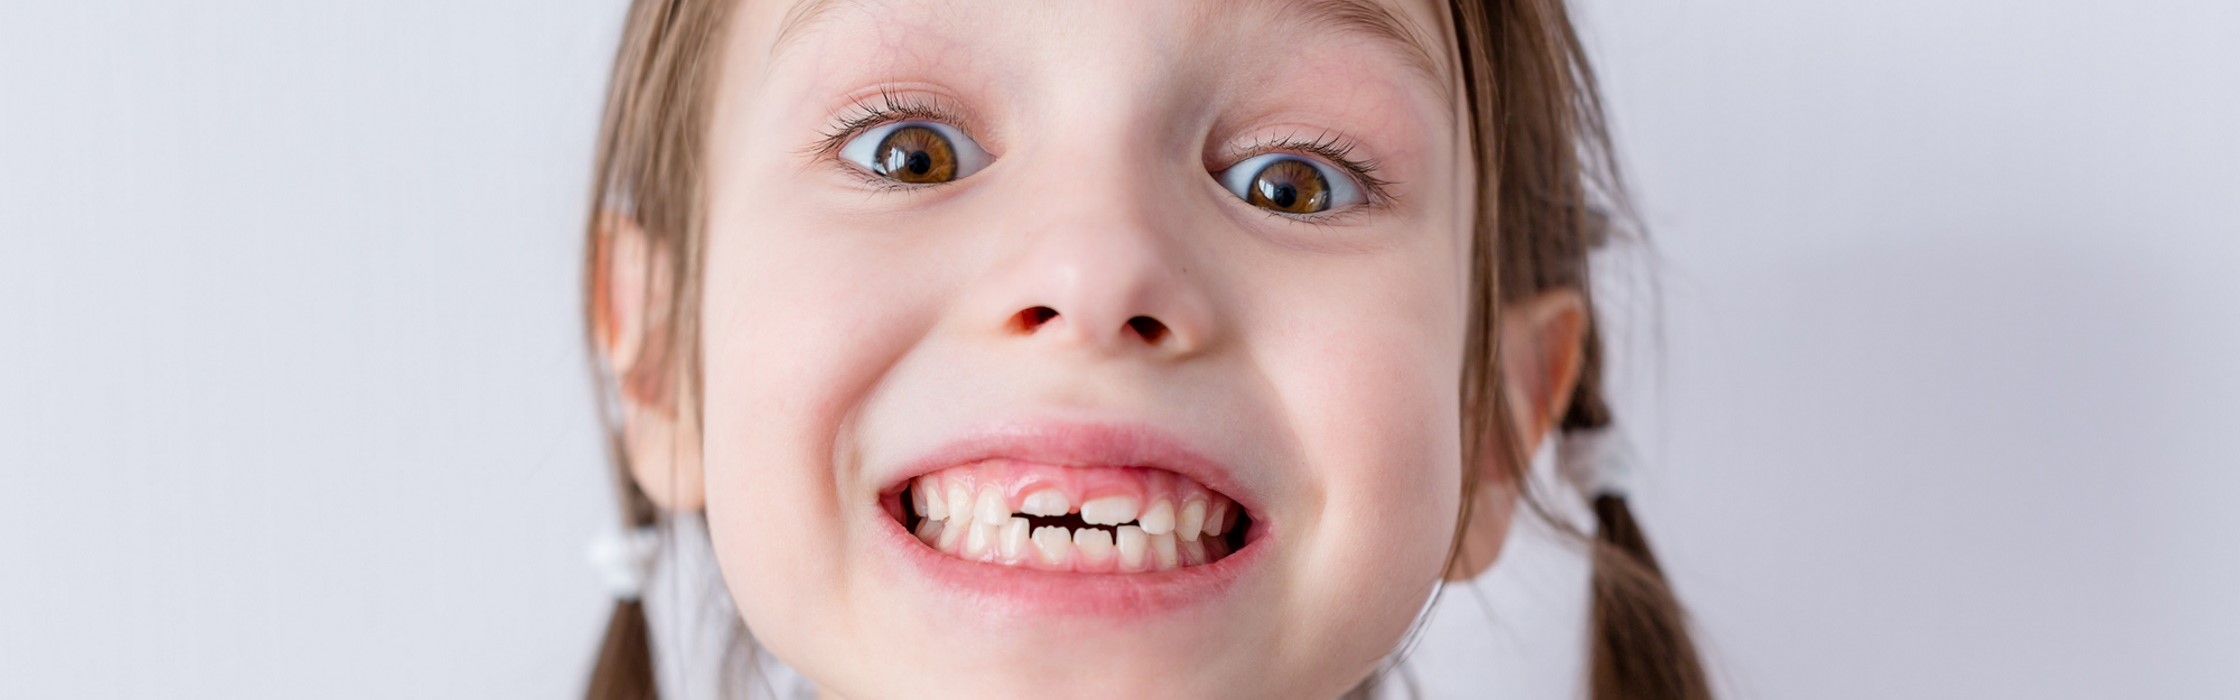 Milchzähne – Wissenswertes über die ersten Zähne